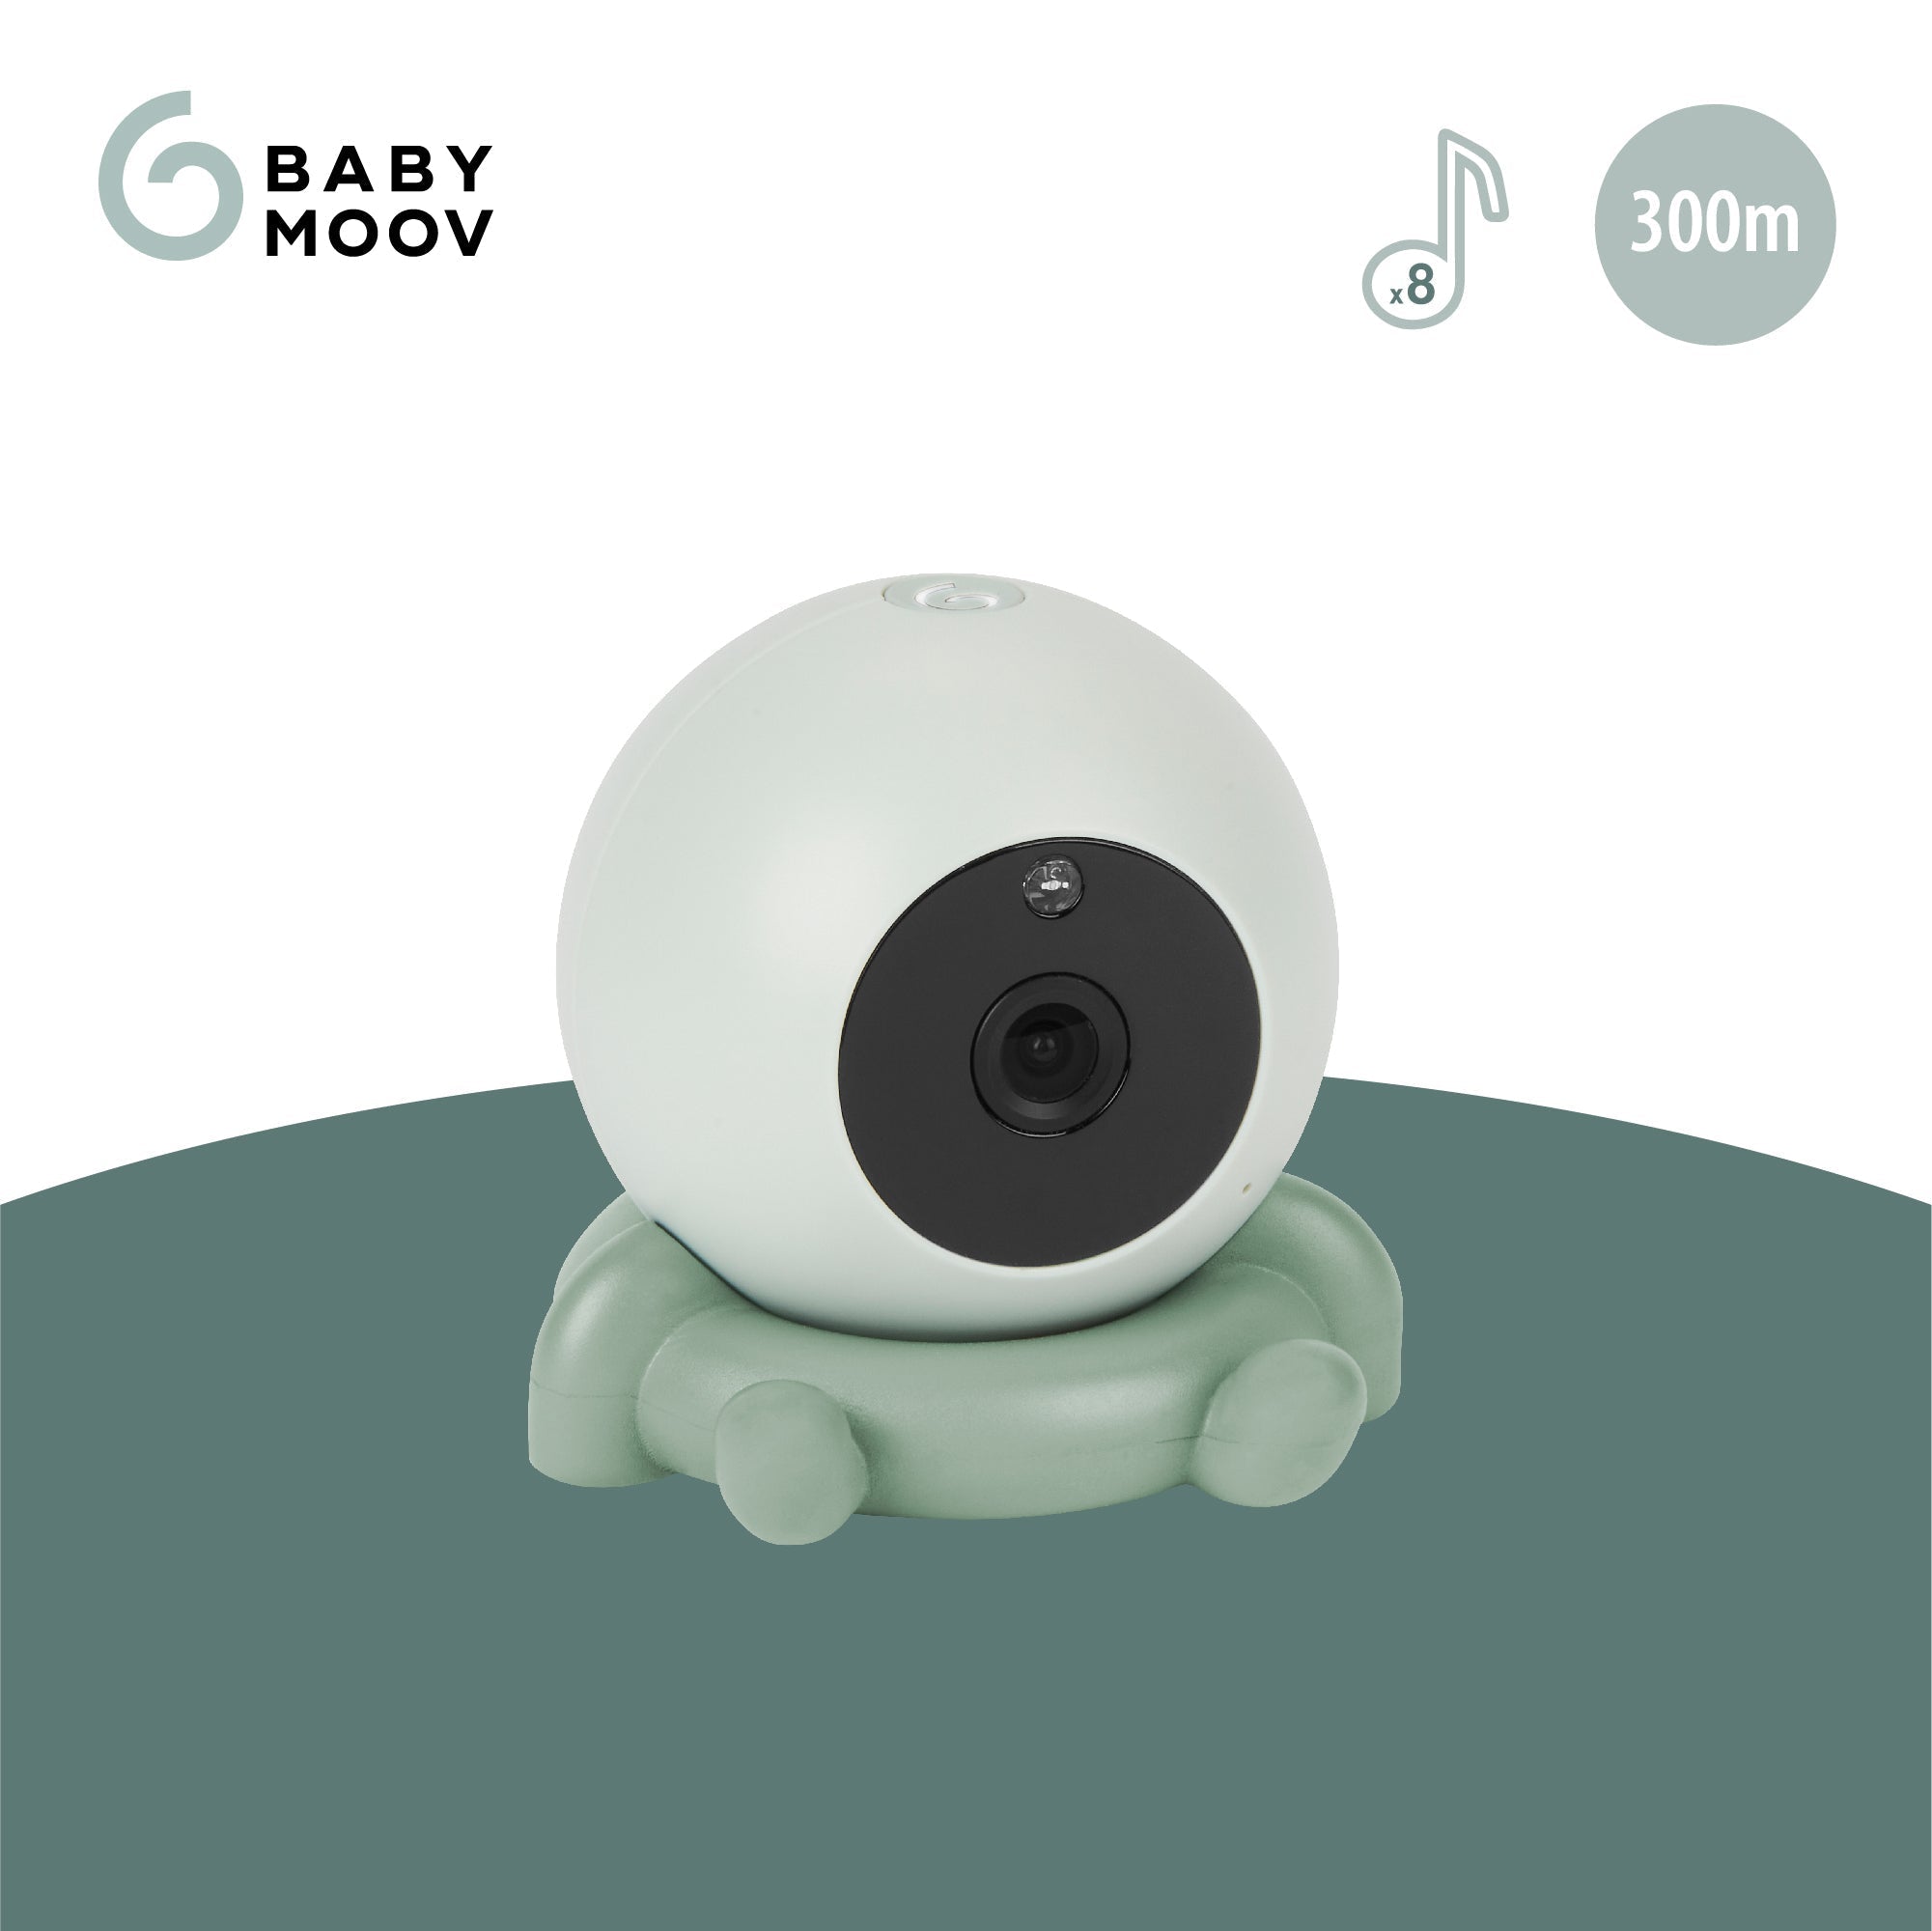 YOO Go Plus 5" Video Monitor Babymoov